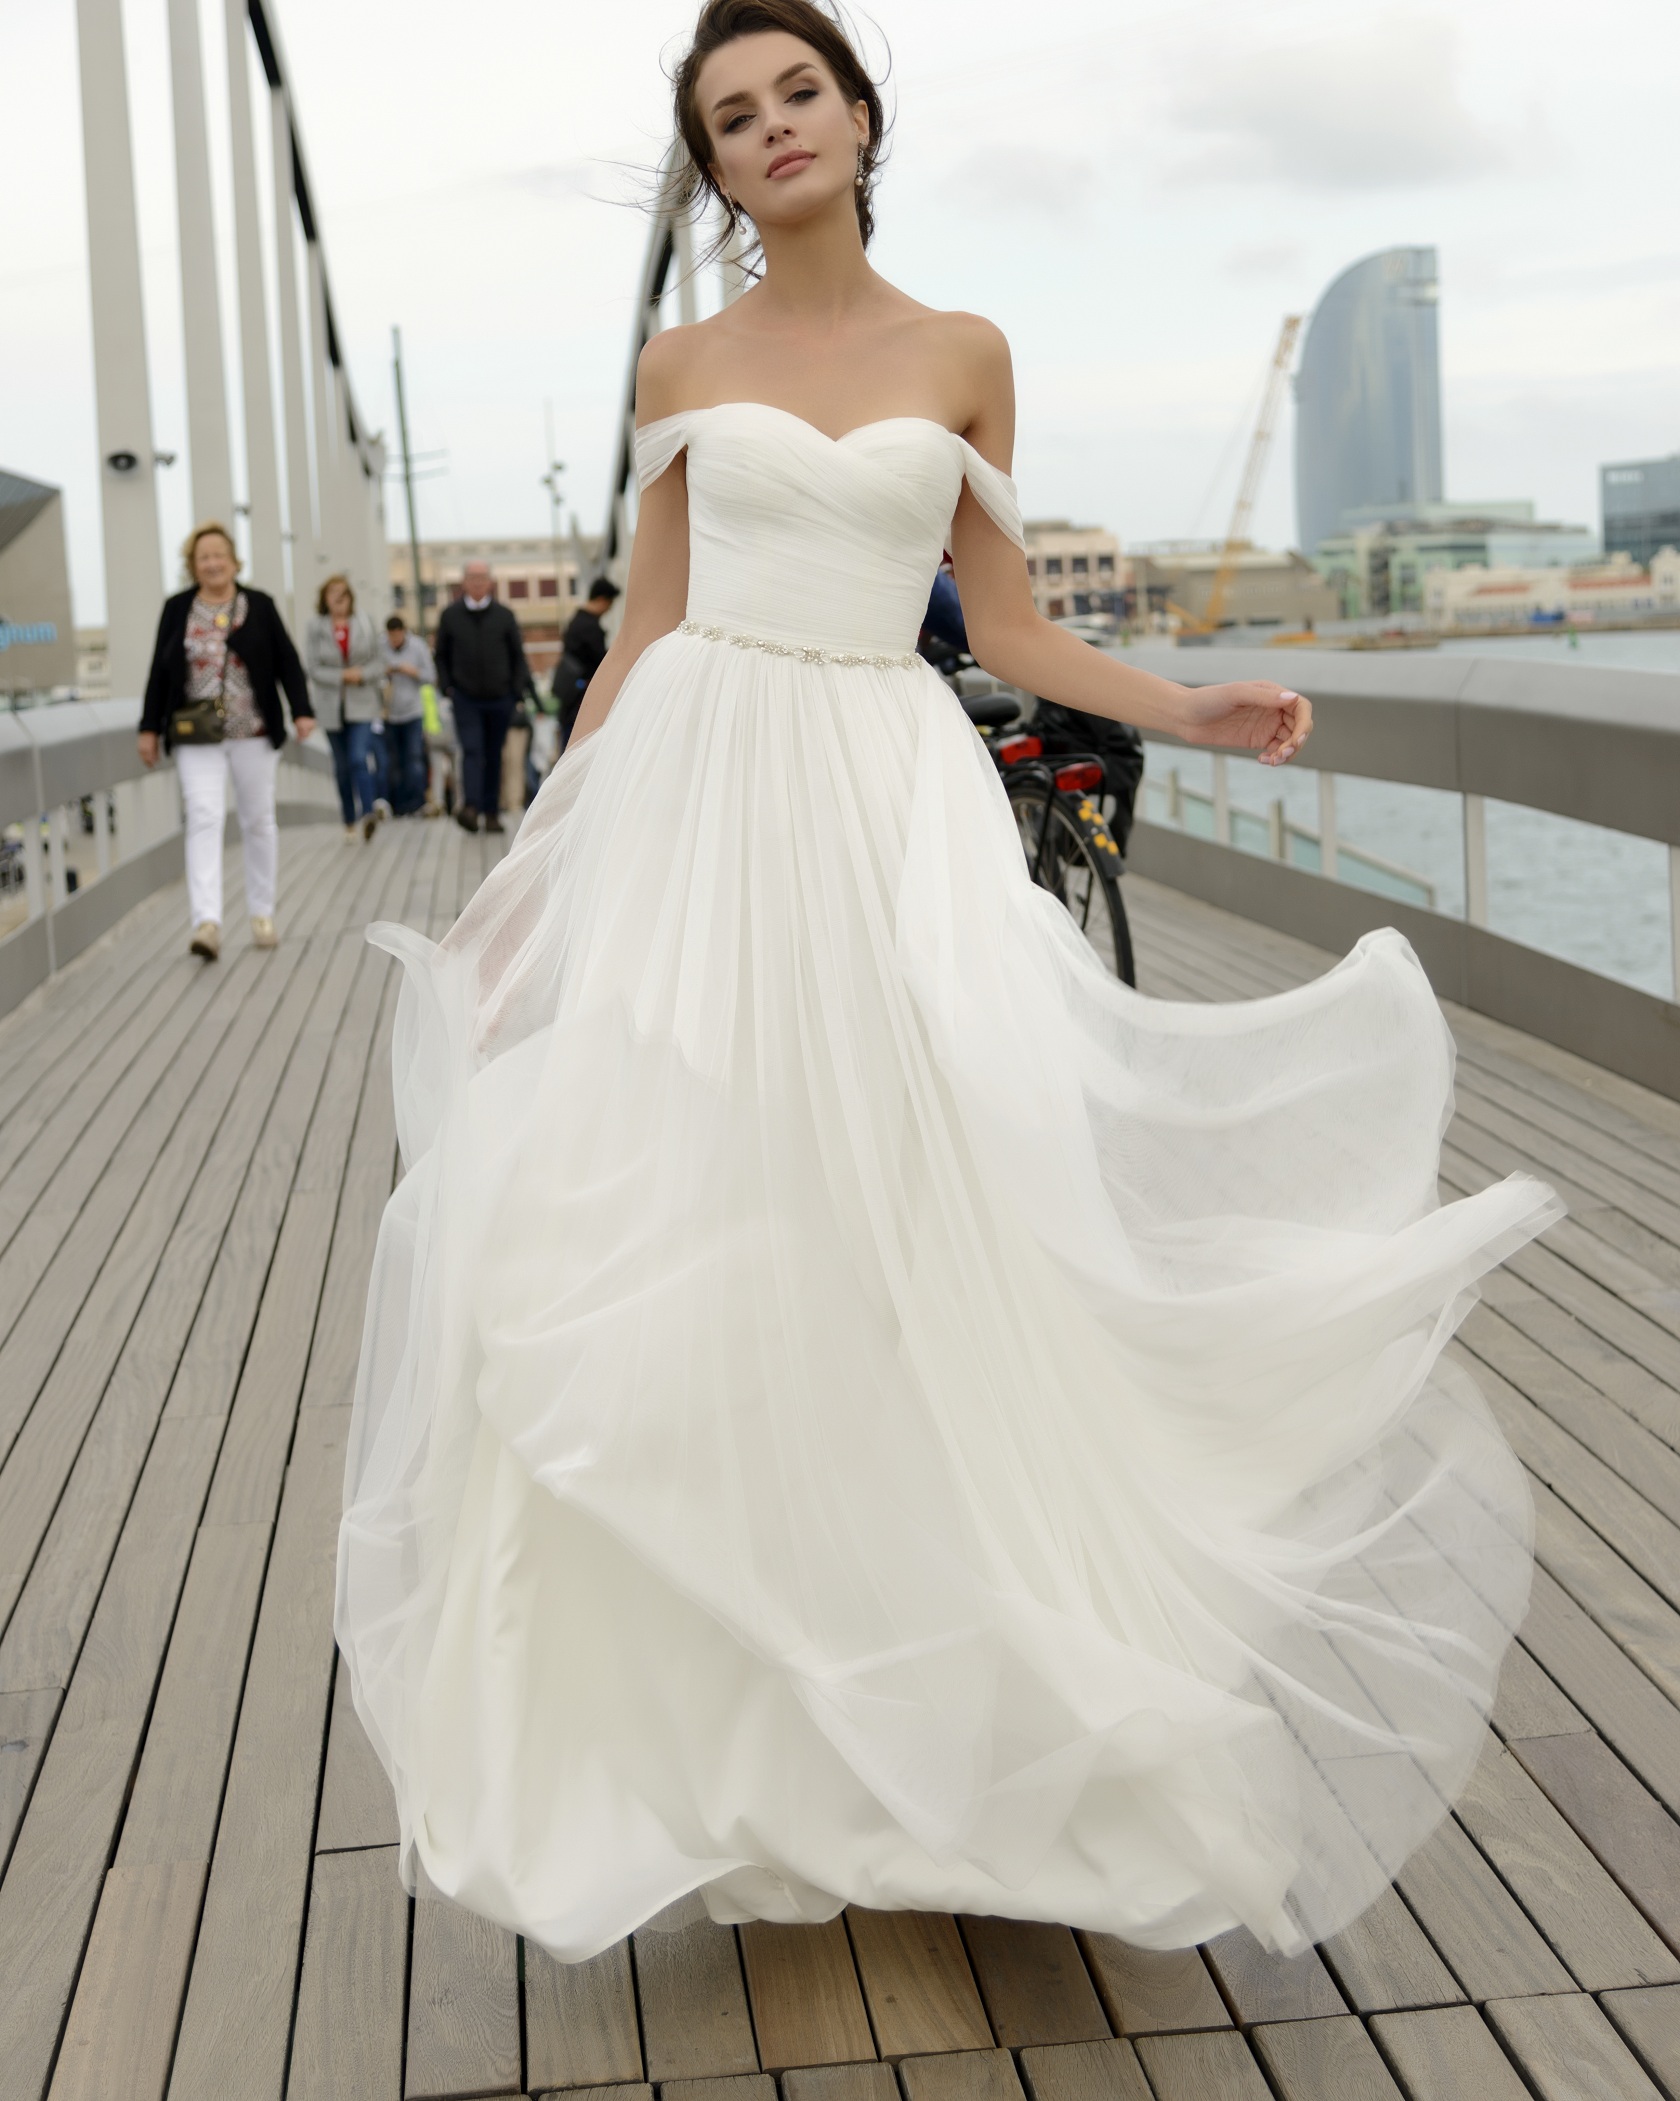 Легкое воздушное свадебное платье